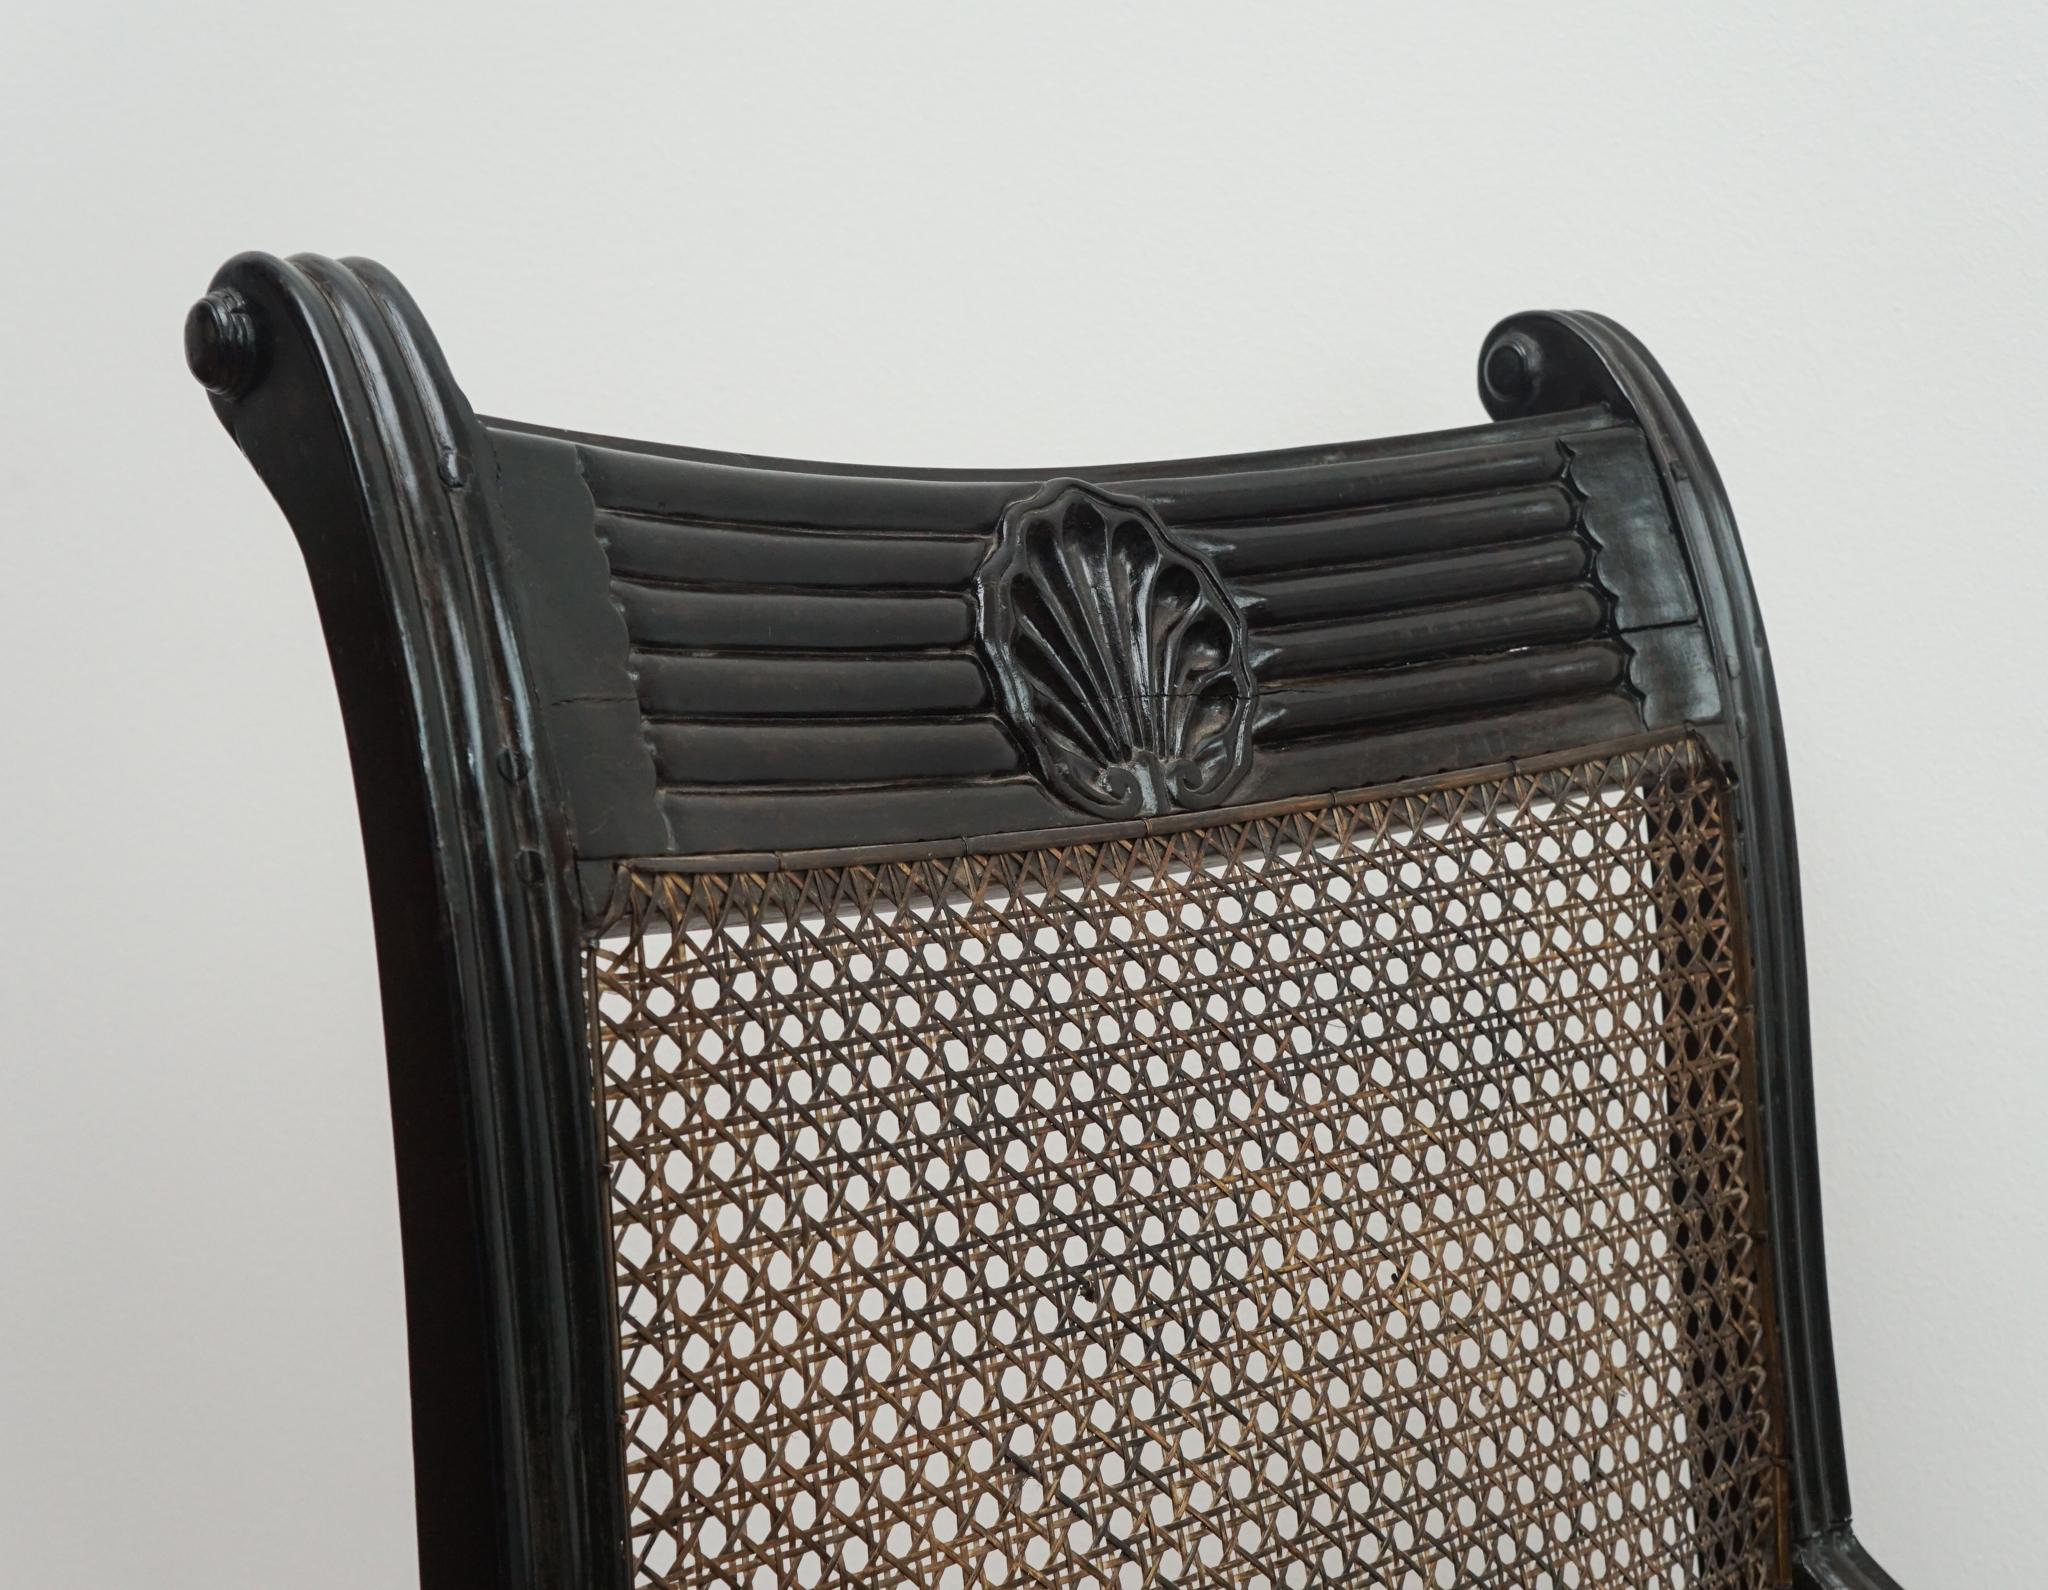 La chaise Grandfather shell mark, présentée ici, provient de Ceylan, vers 1820.  Dotée d'un cadre en ébène sculpté - distingué par une marque de coquillage sur la traverse supérieure - et d'une assise et d'un dossier cannés à la main, cette chaise